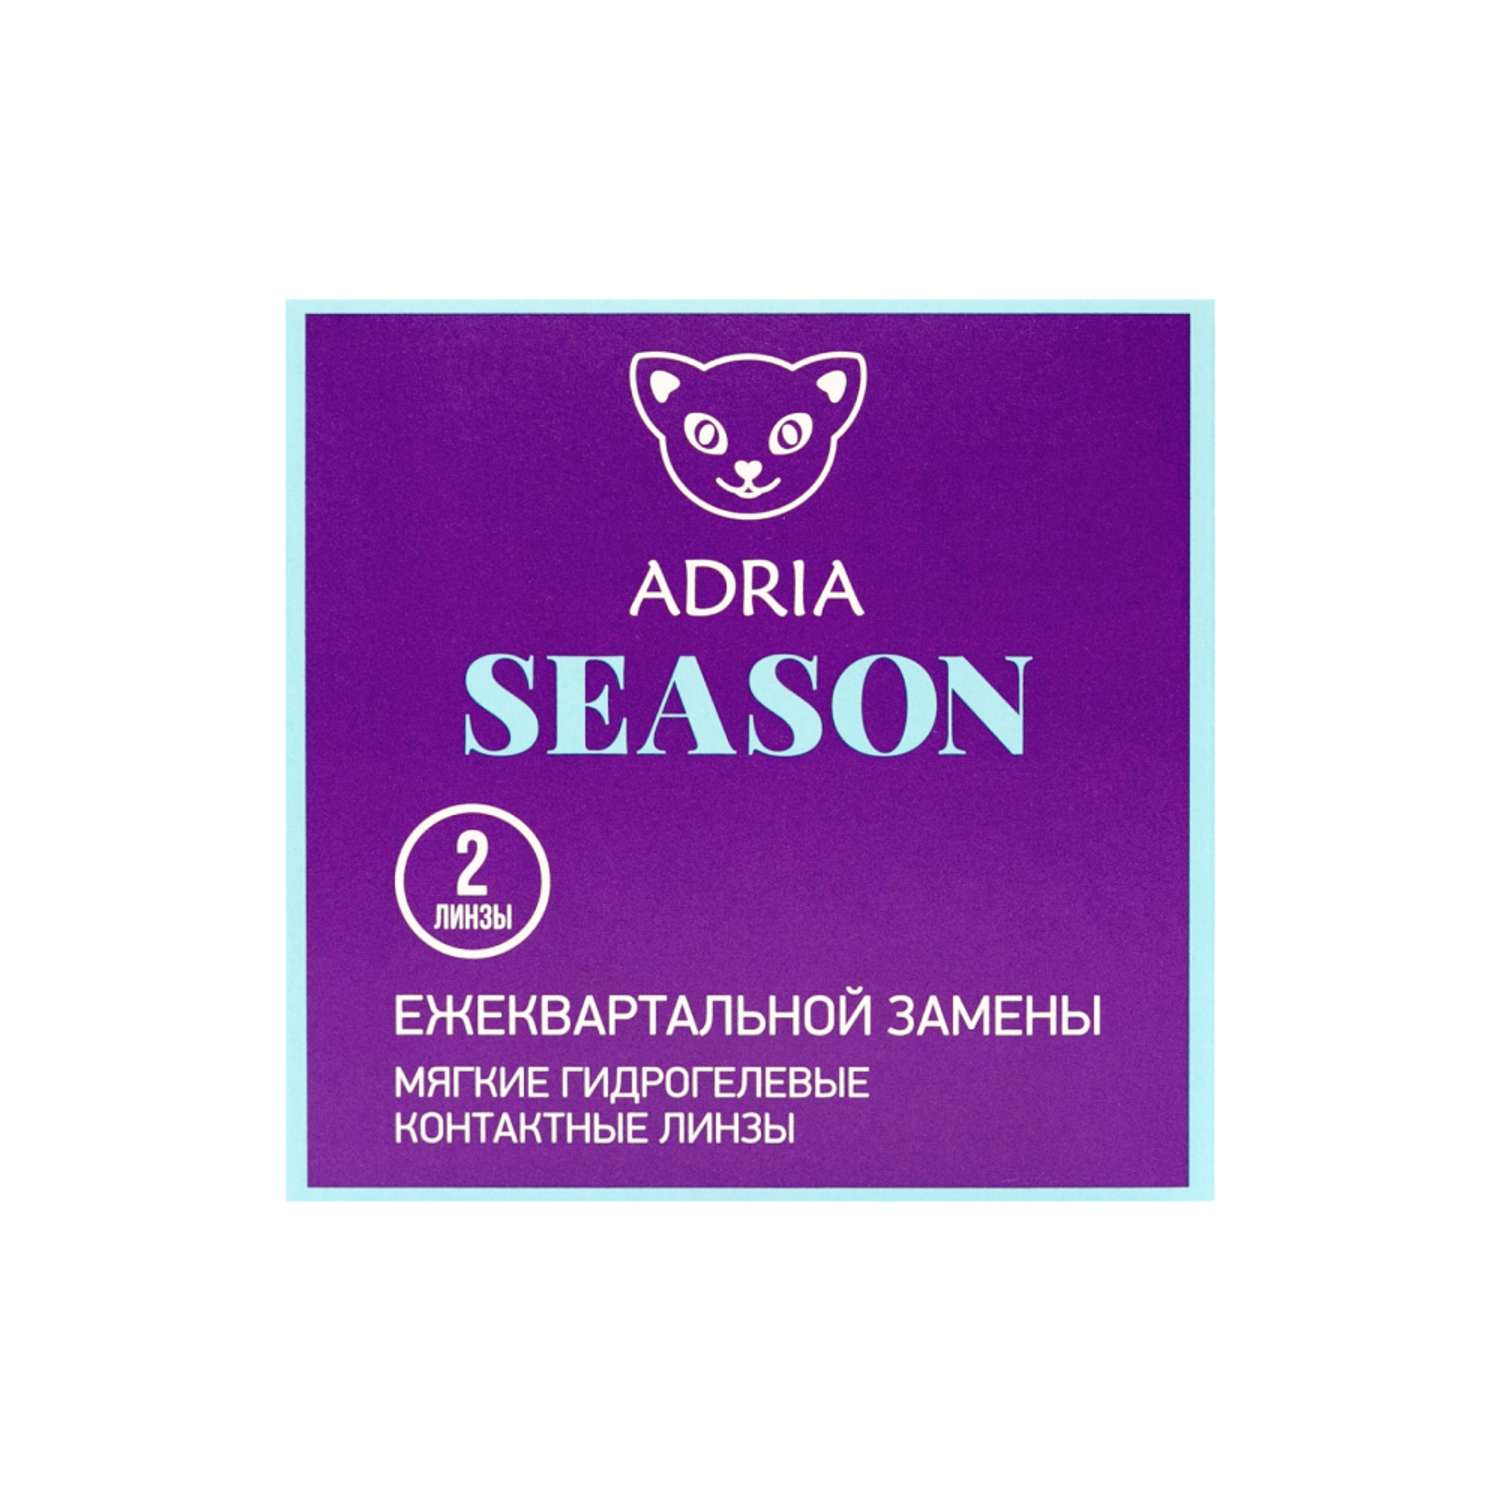 Контактные линзы ADRIA Season 2 линзы R 8.6 -4.25 - фото 6